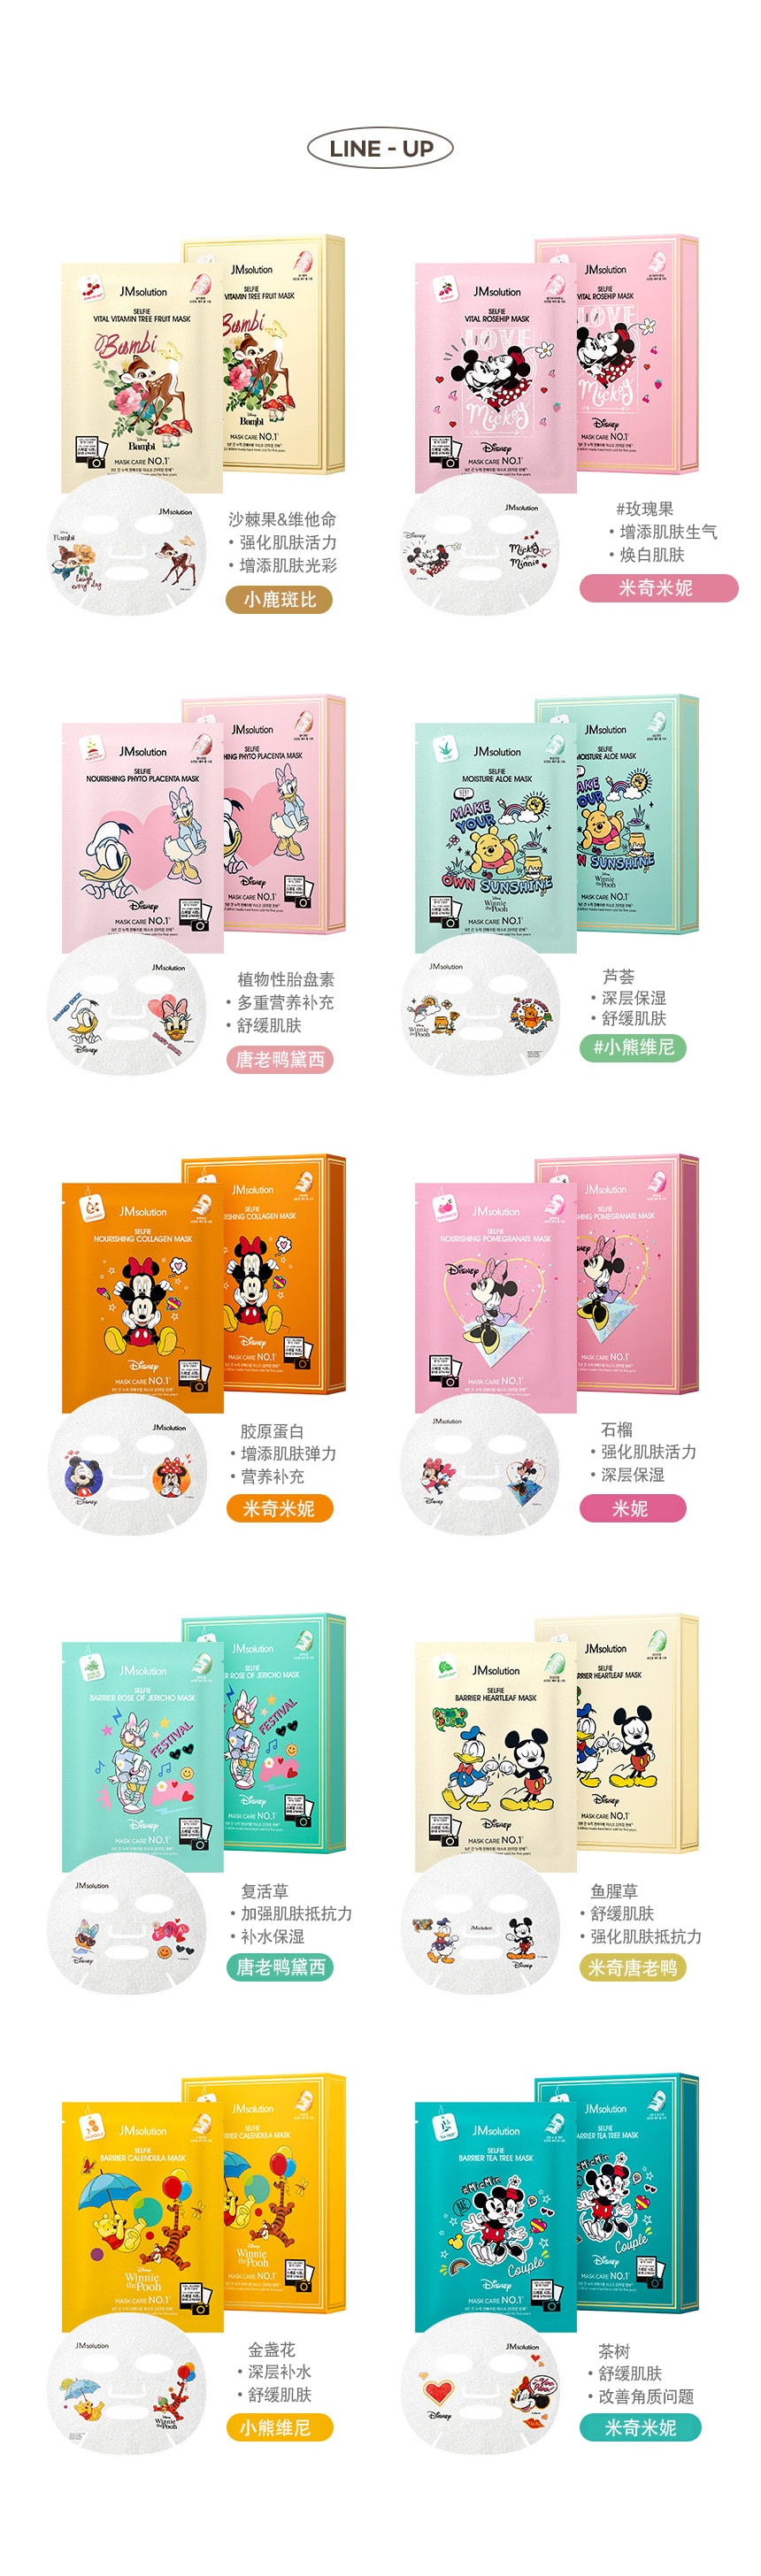 韩国 JMsolution 【迪士尼聯名款】限量卡通面膜系列  #黛西-复活草 10片/ 1 盒